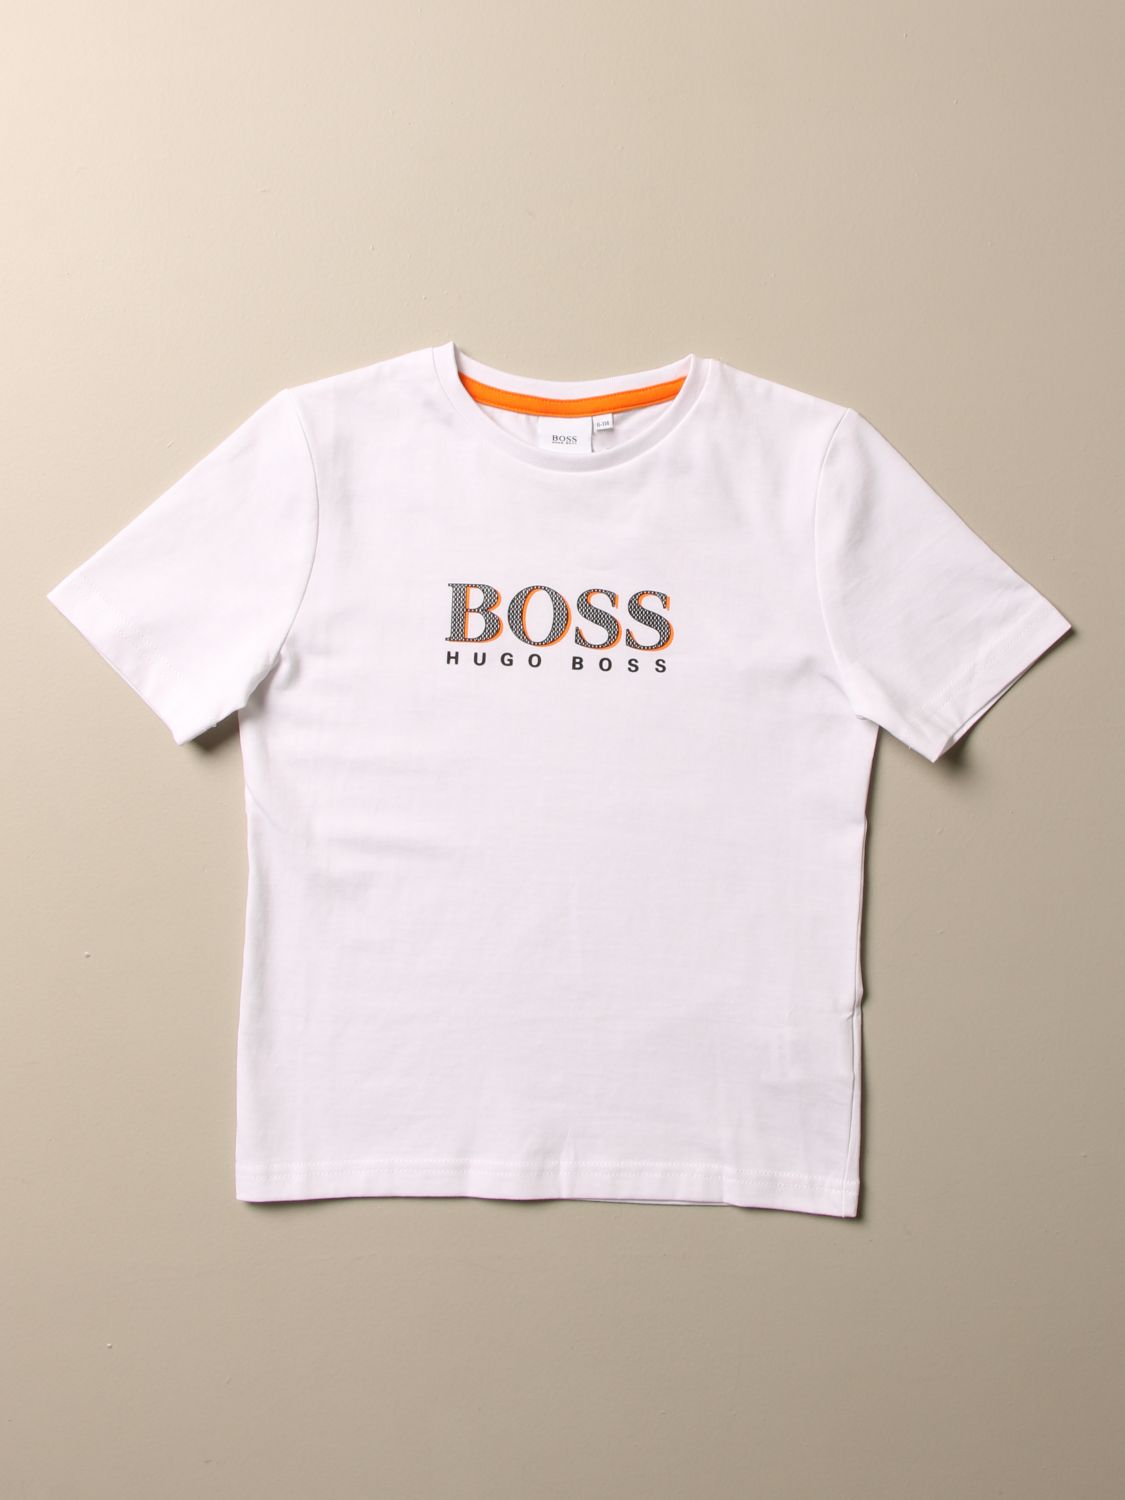 hugo boss kids tshirt